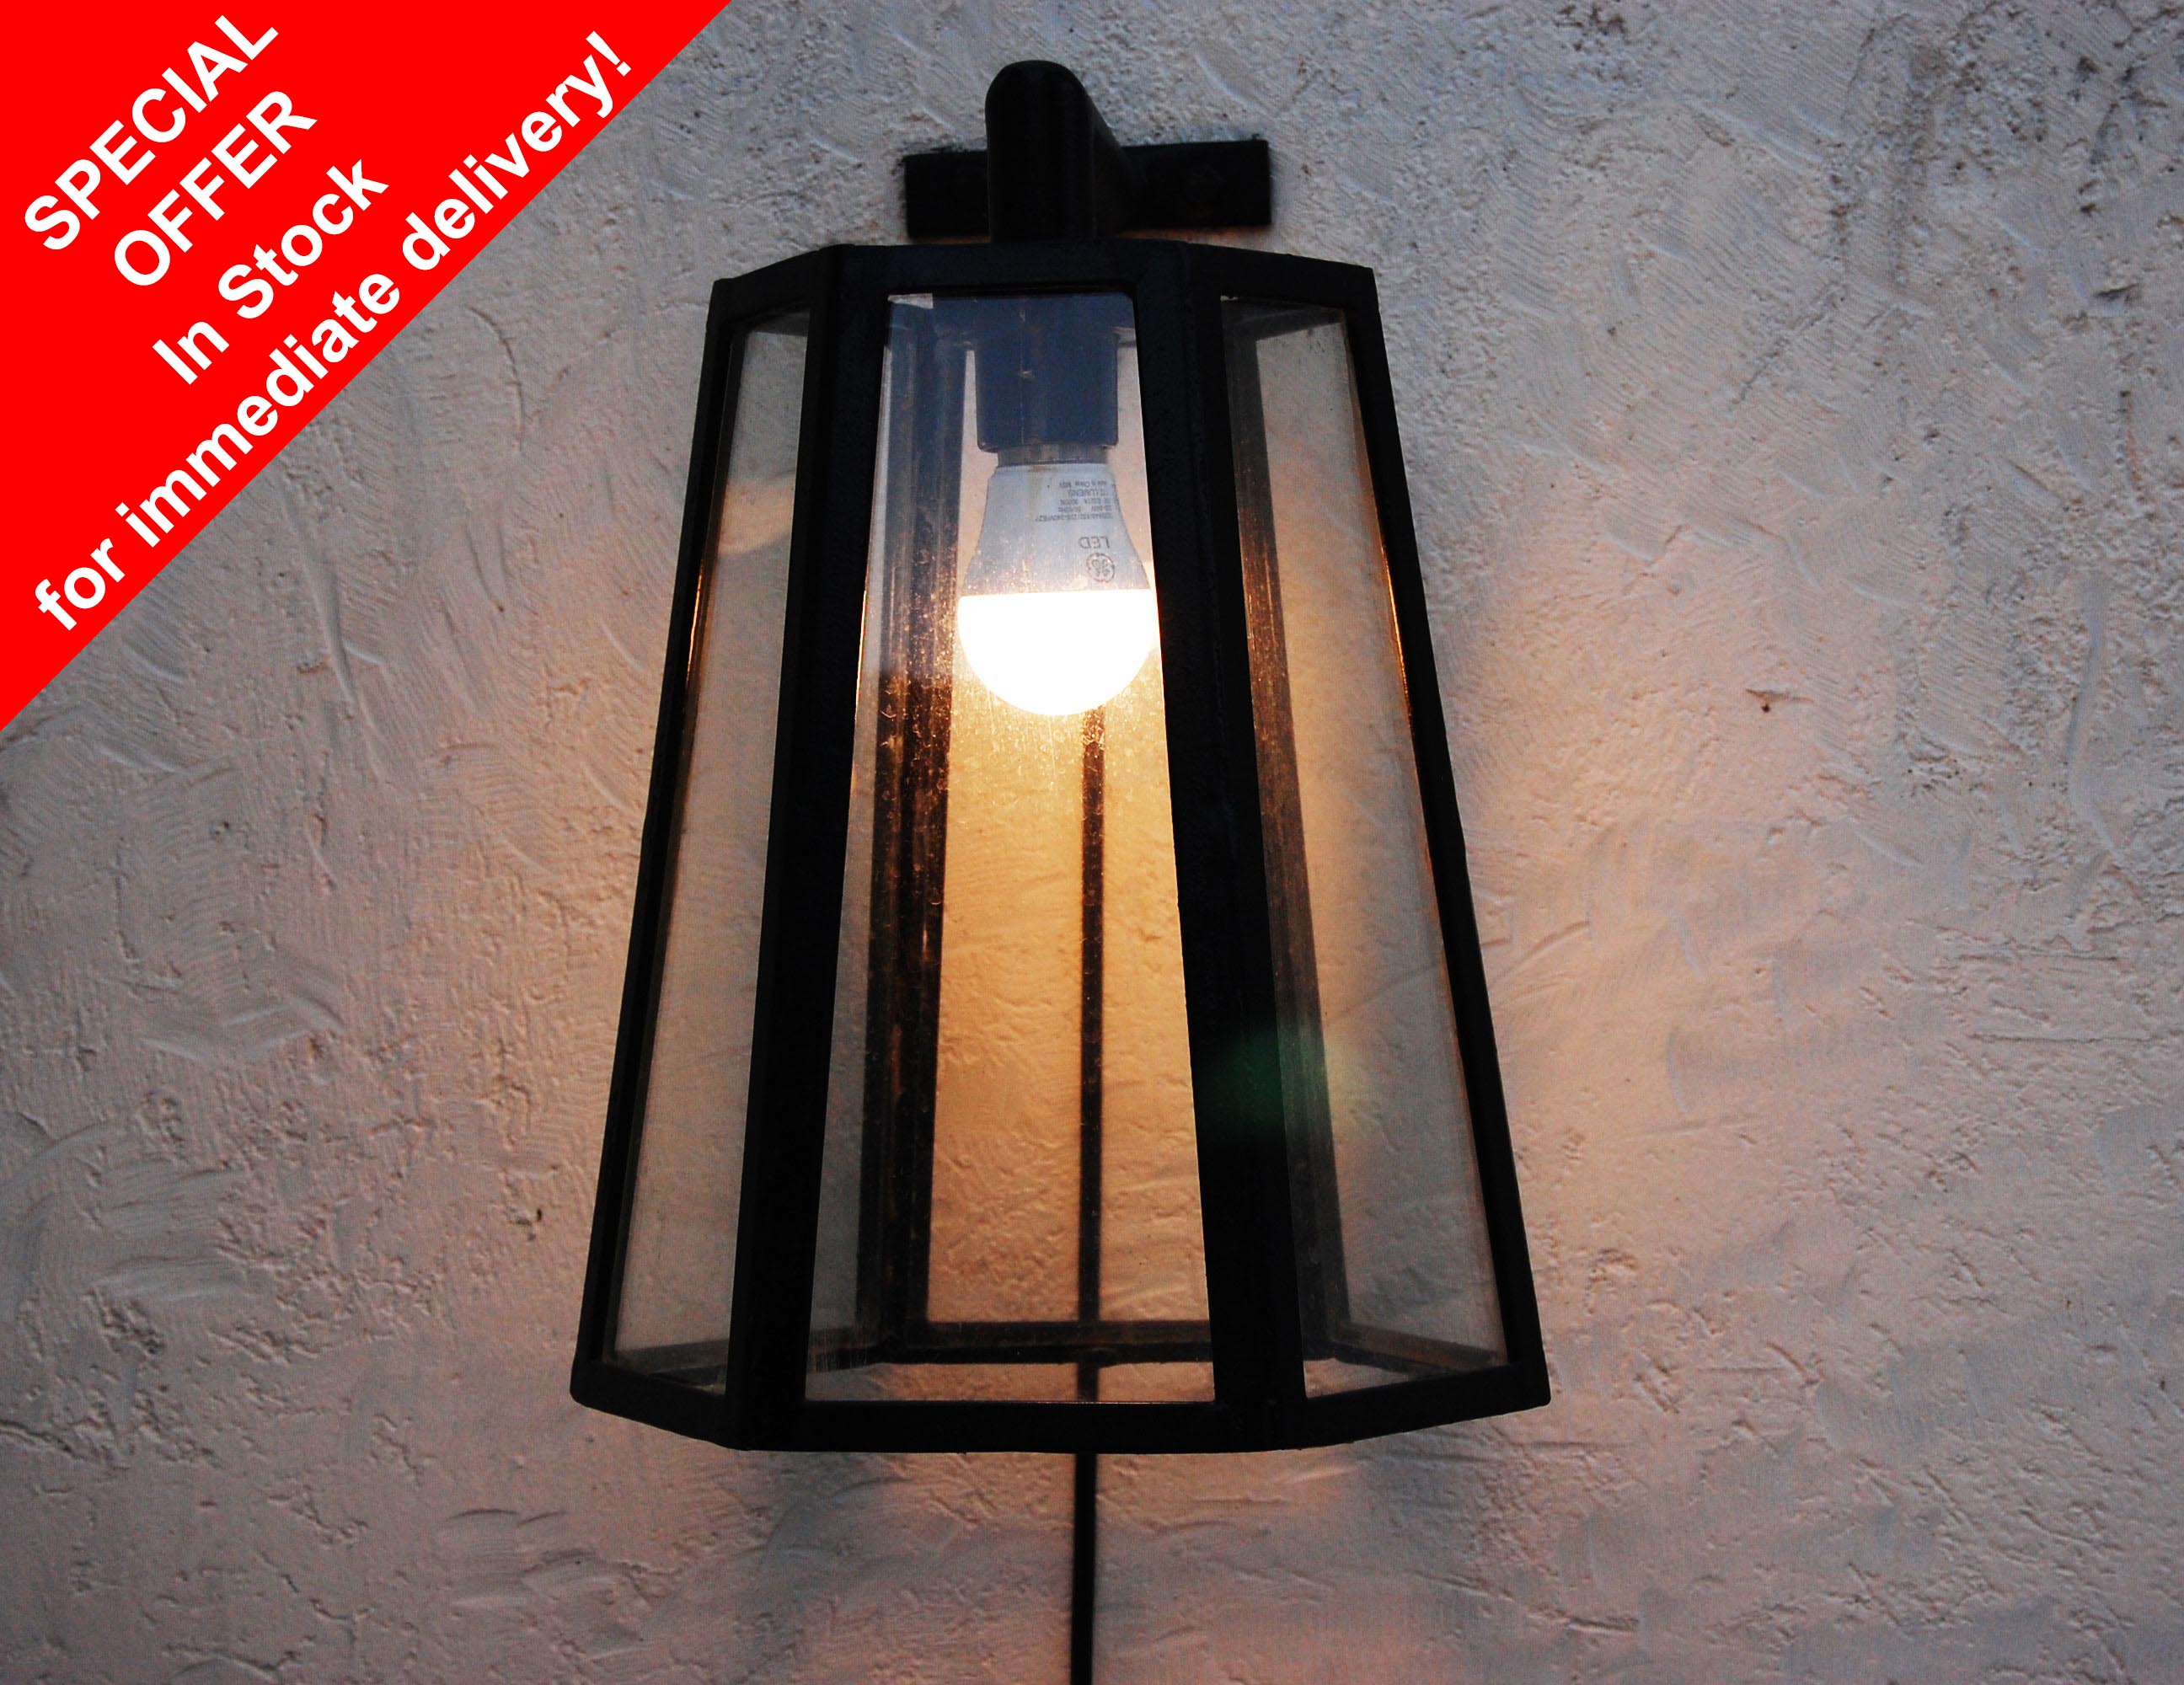 ArtSteel Outdoor Lamp 04a